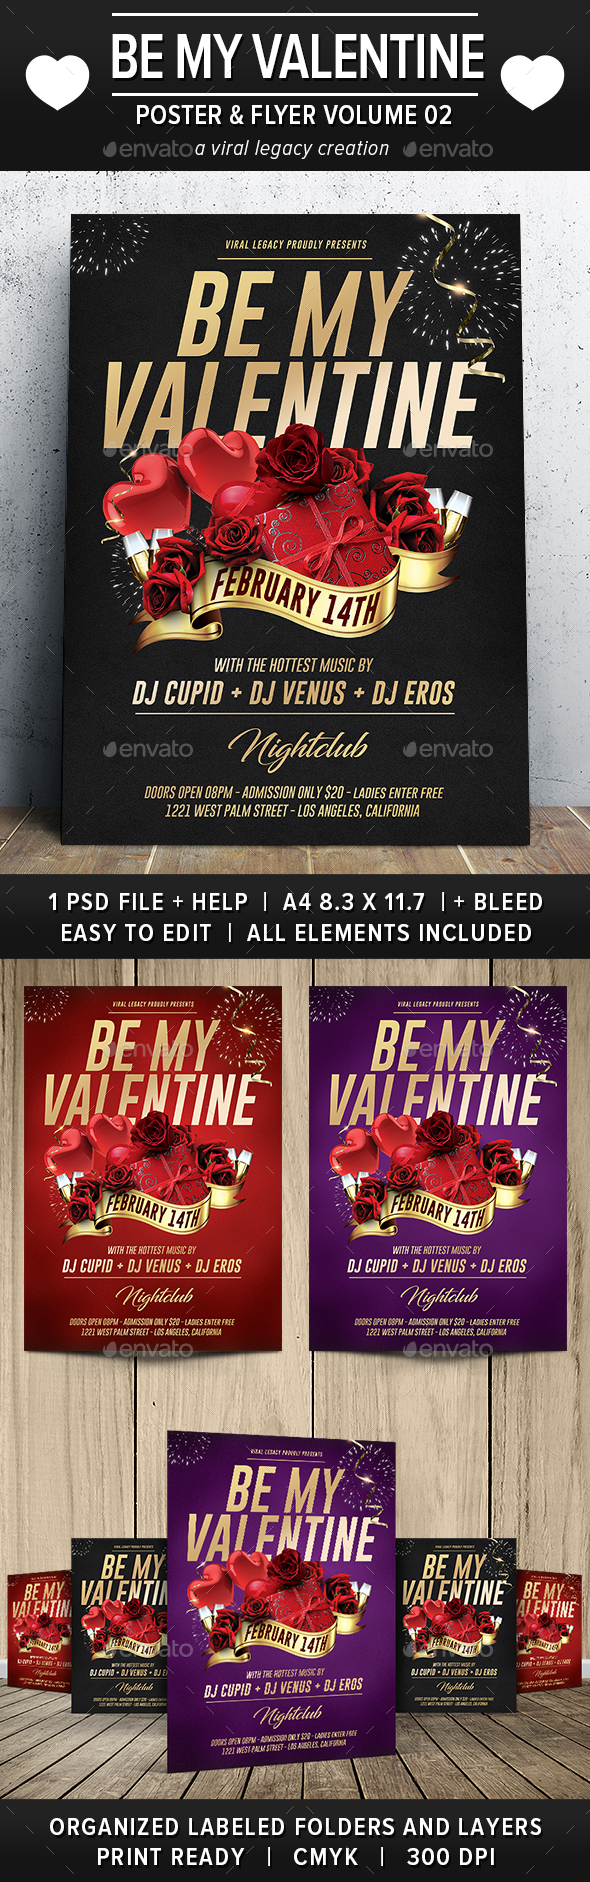 Be My Valentine Poster / Flyer V02